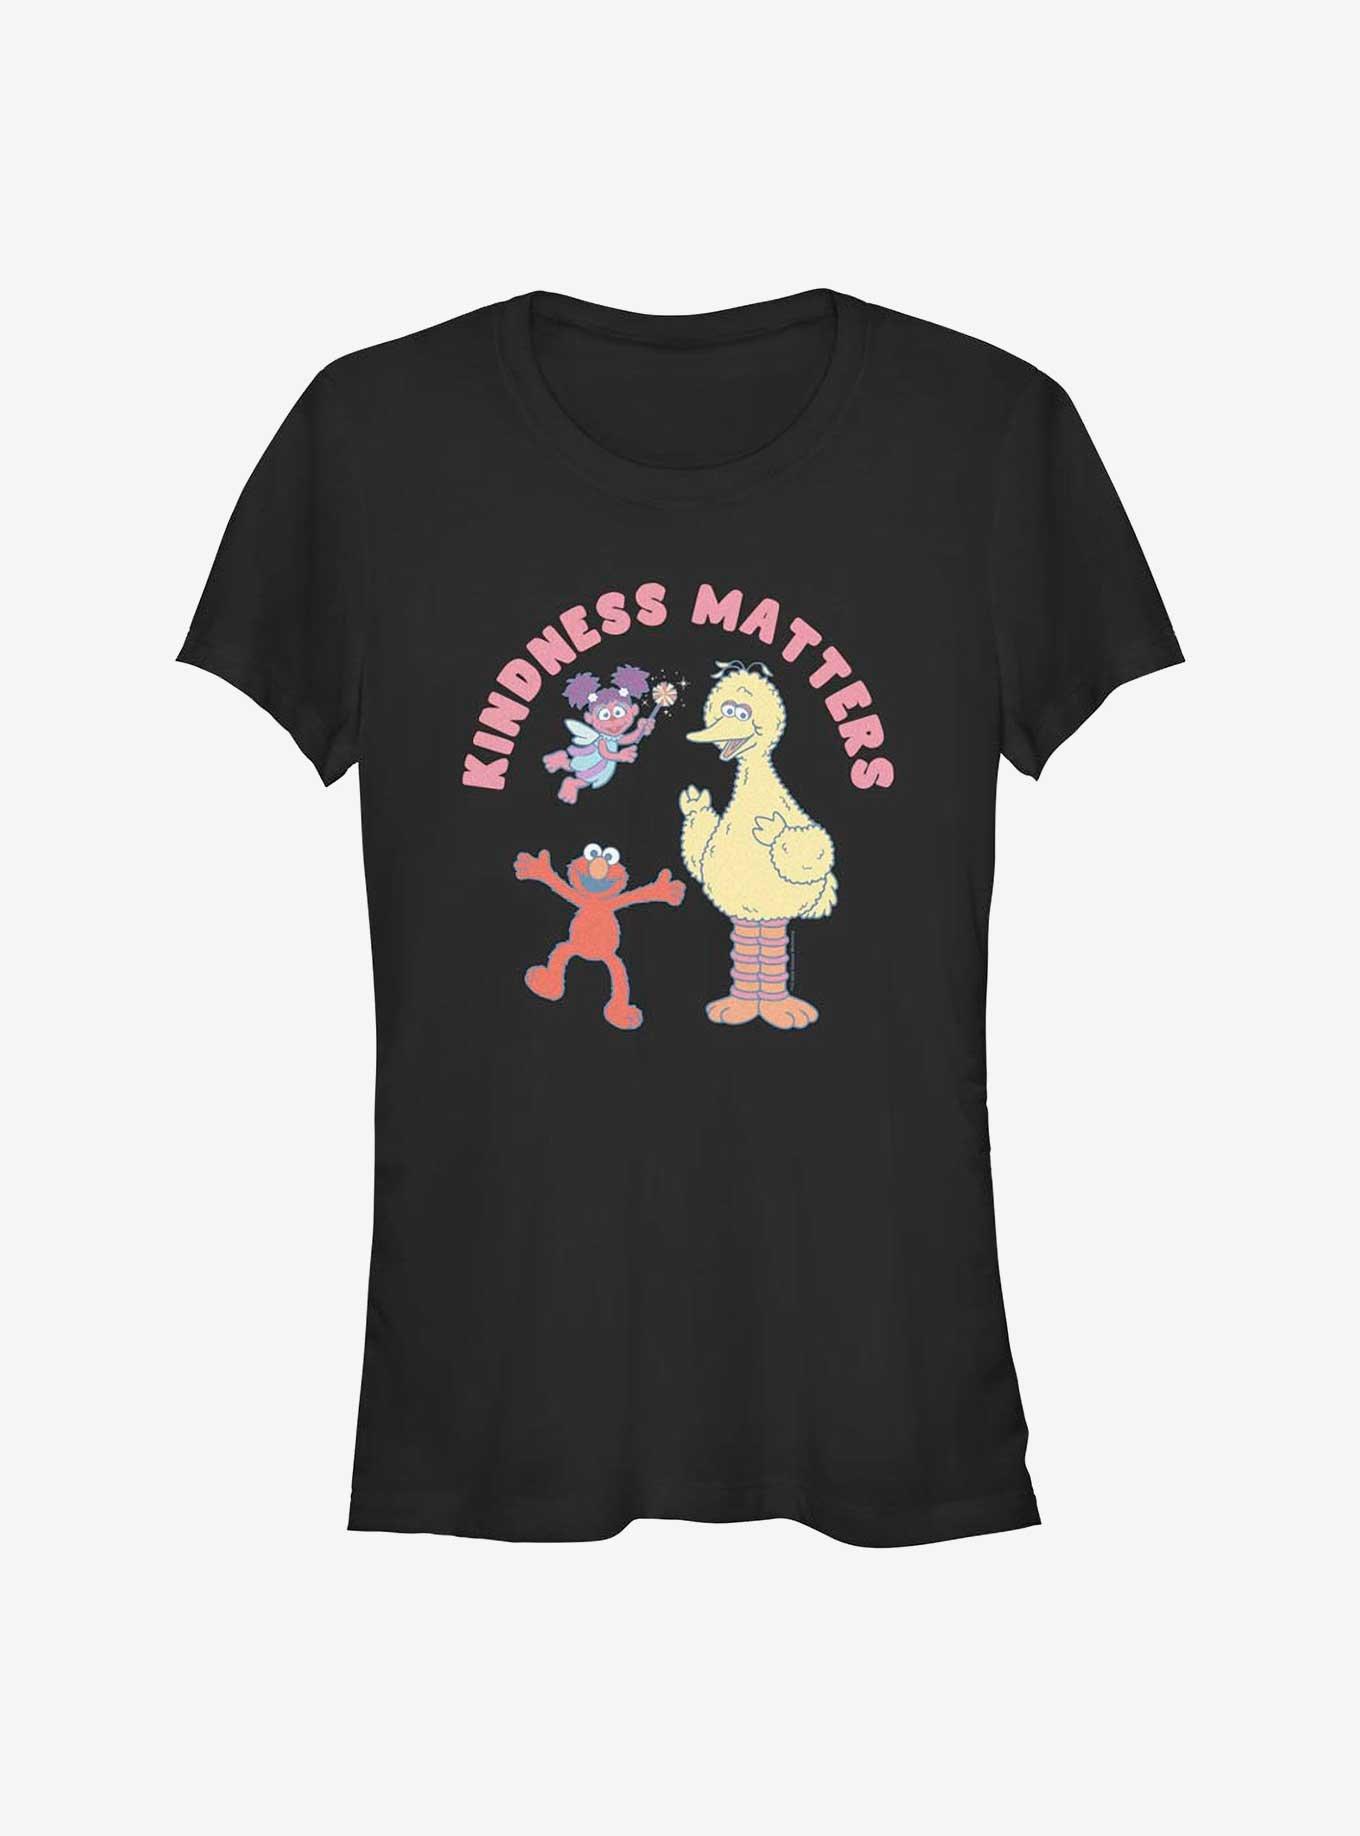 Sesame Street Kindness Matters Girls T-Shirt